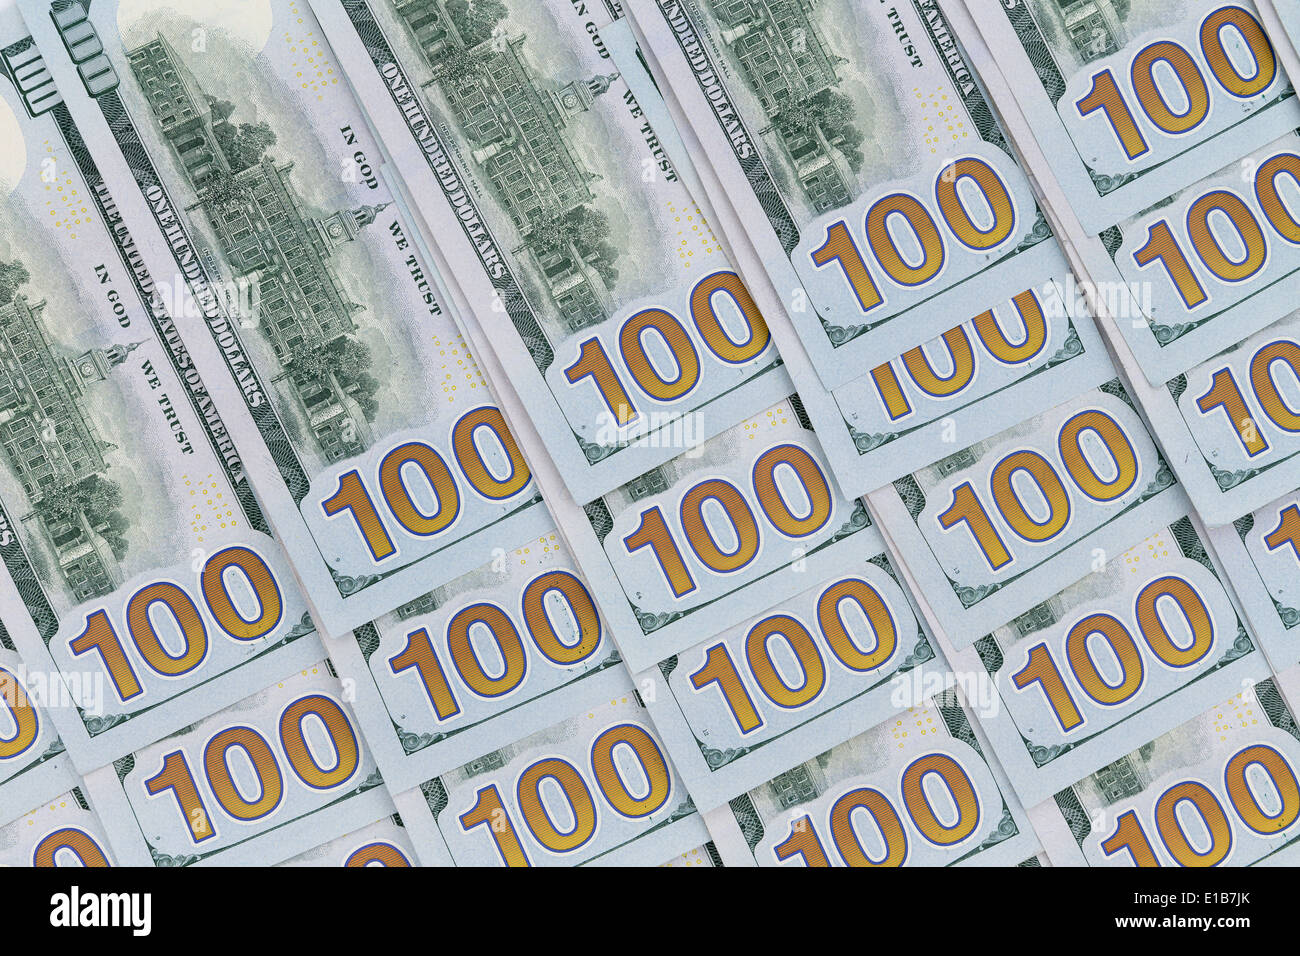 100 billets américains en dollars sont soigneusement disposées face vers le bas avec la dénomination des chiffres alignés en diagonale dans un concept Banque D'Images